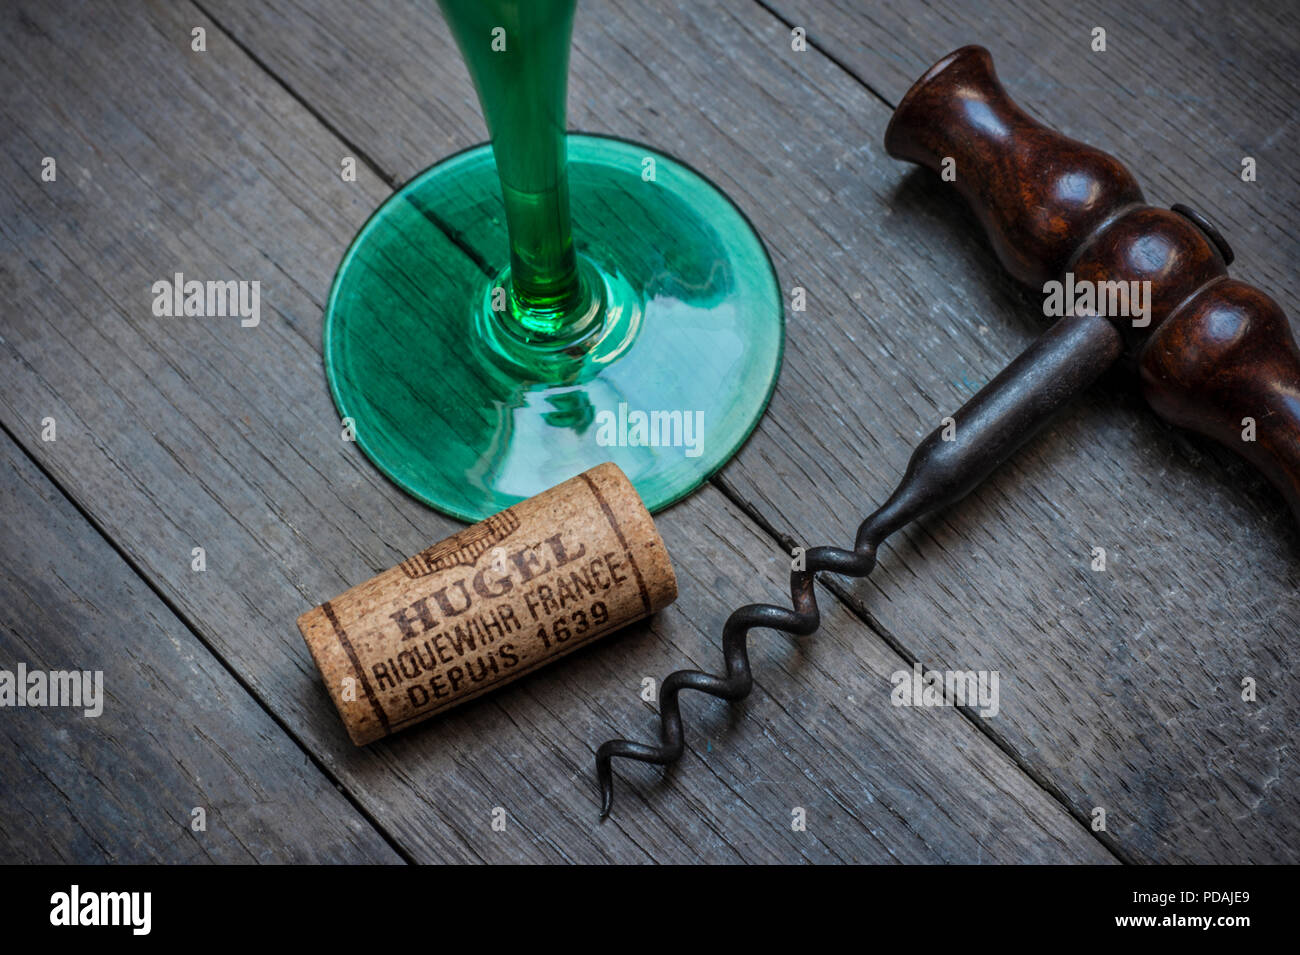 ALSACE HUGEL bicchiere da vino sughero e cavatappi in moody cantina Degustazione situazione dal rinomato produttore 'Hugel Riquewihr' Alsace Francia Foto Stock